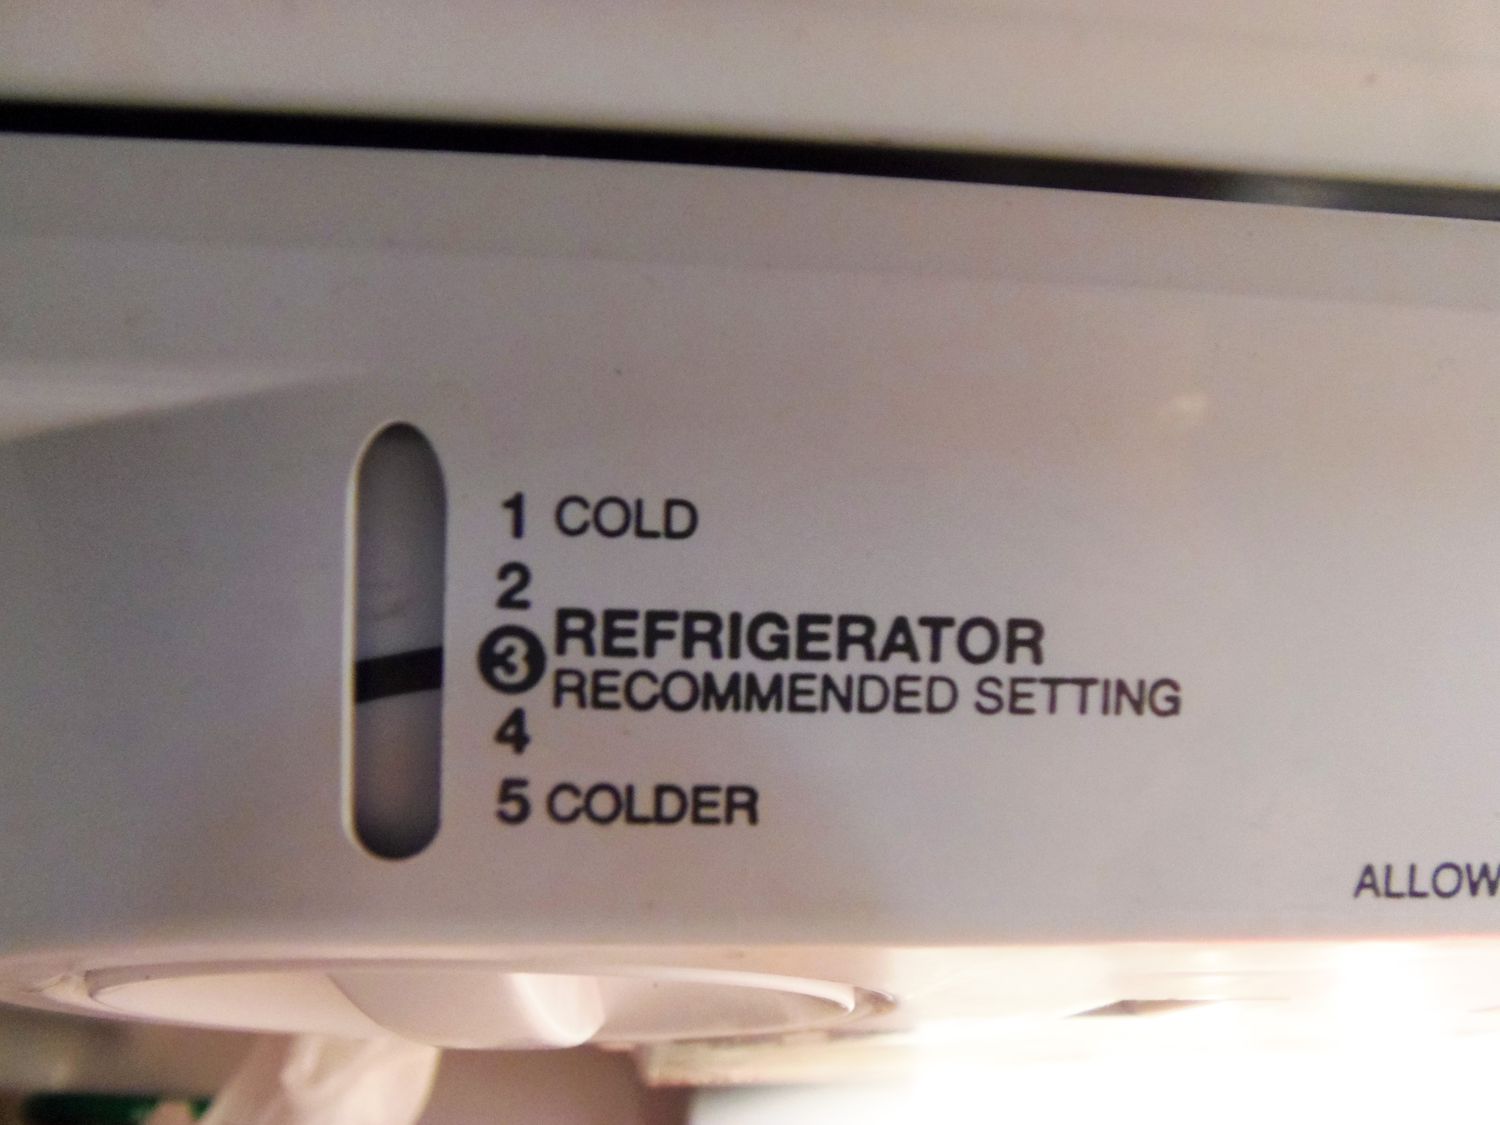 Réglages intérieurs du réfrigérateur, notamment froid, réglage recommandé et plus froid.